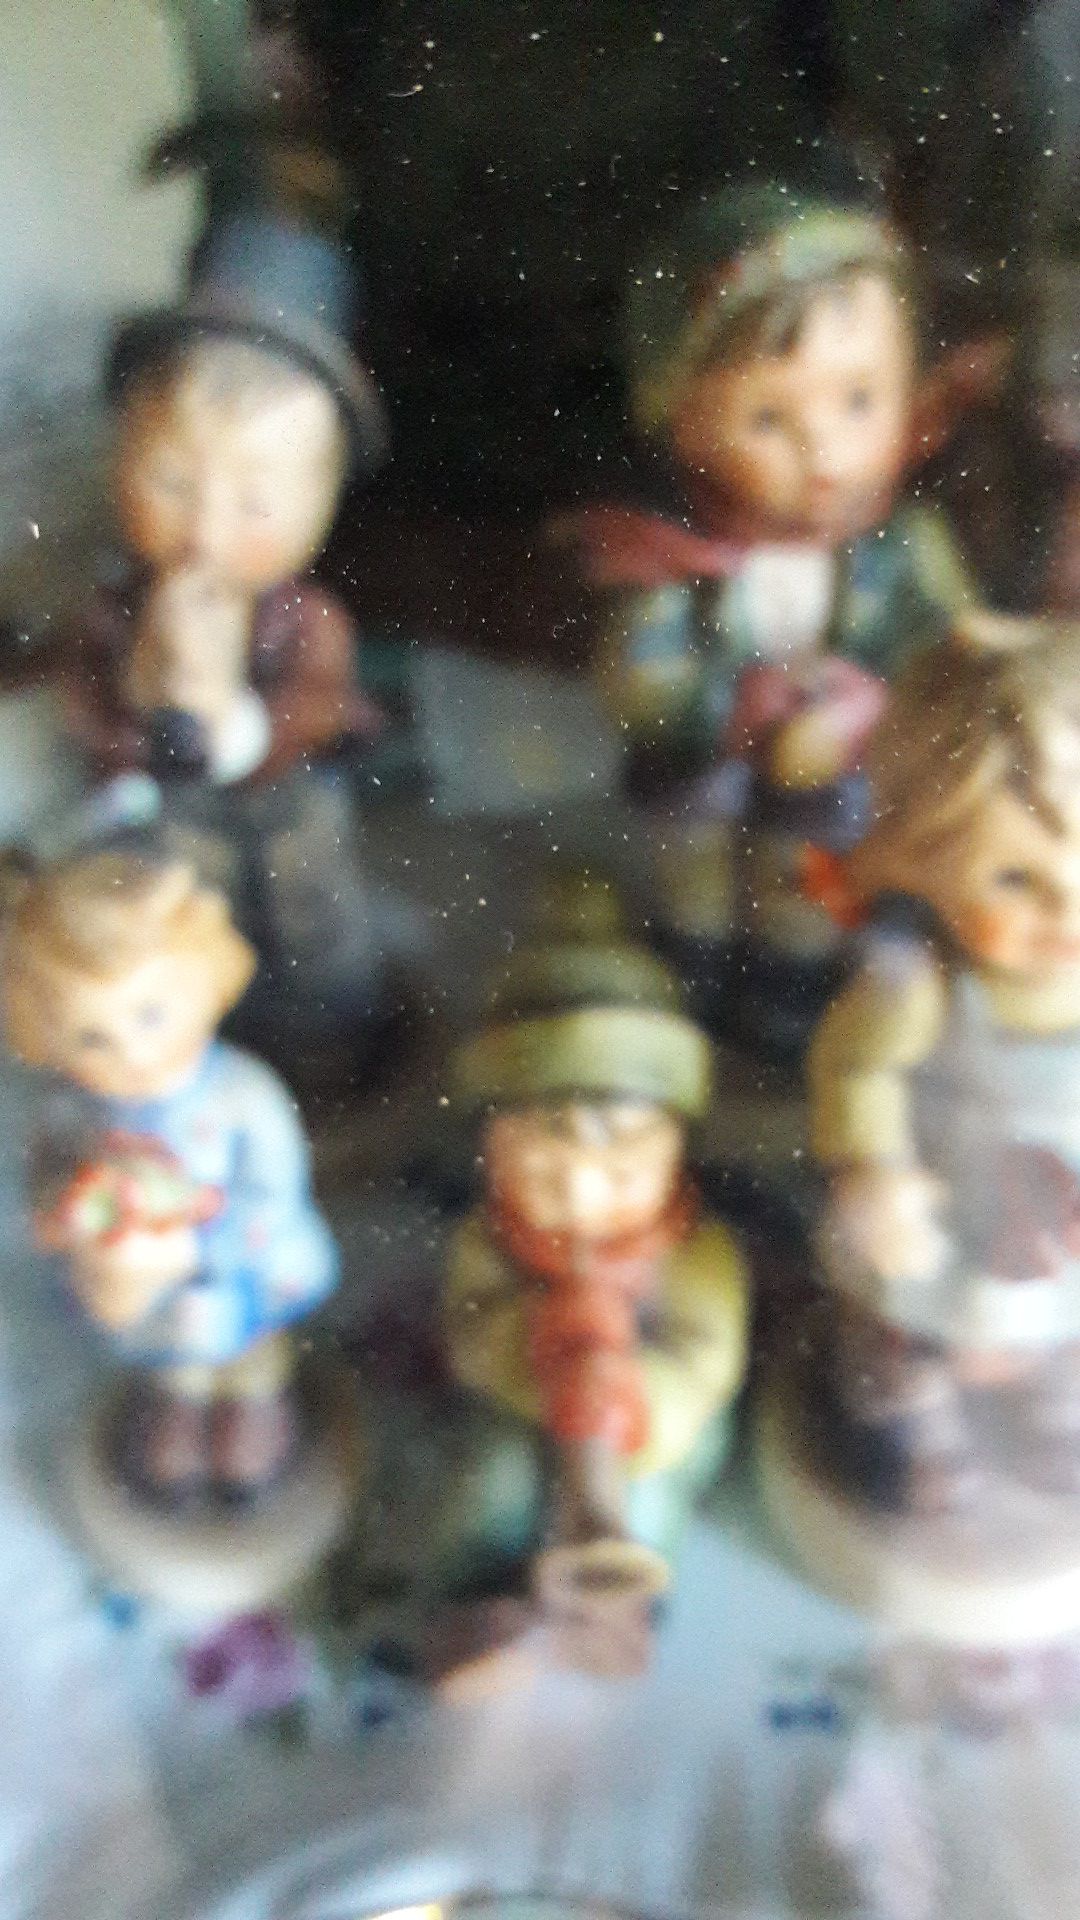 Goebel Hummel figurines